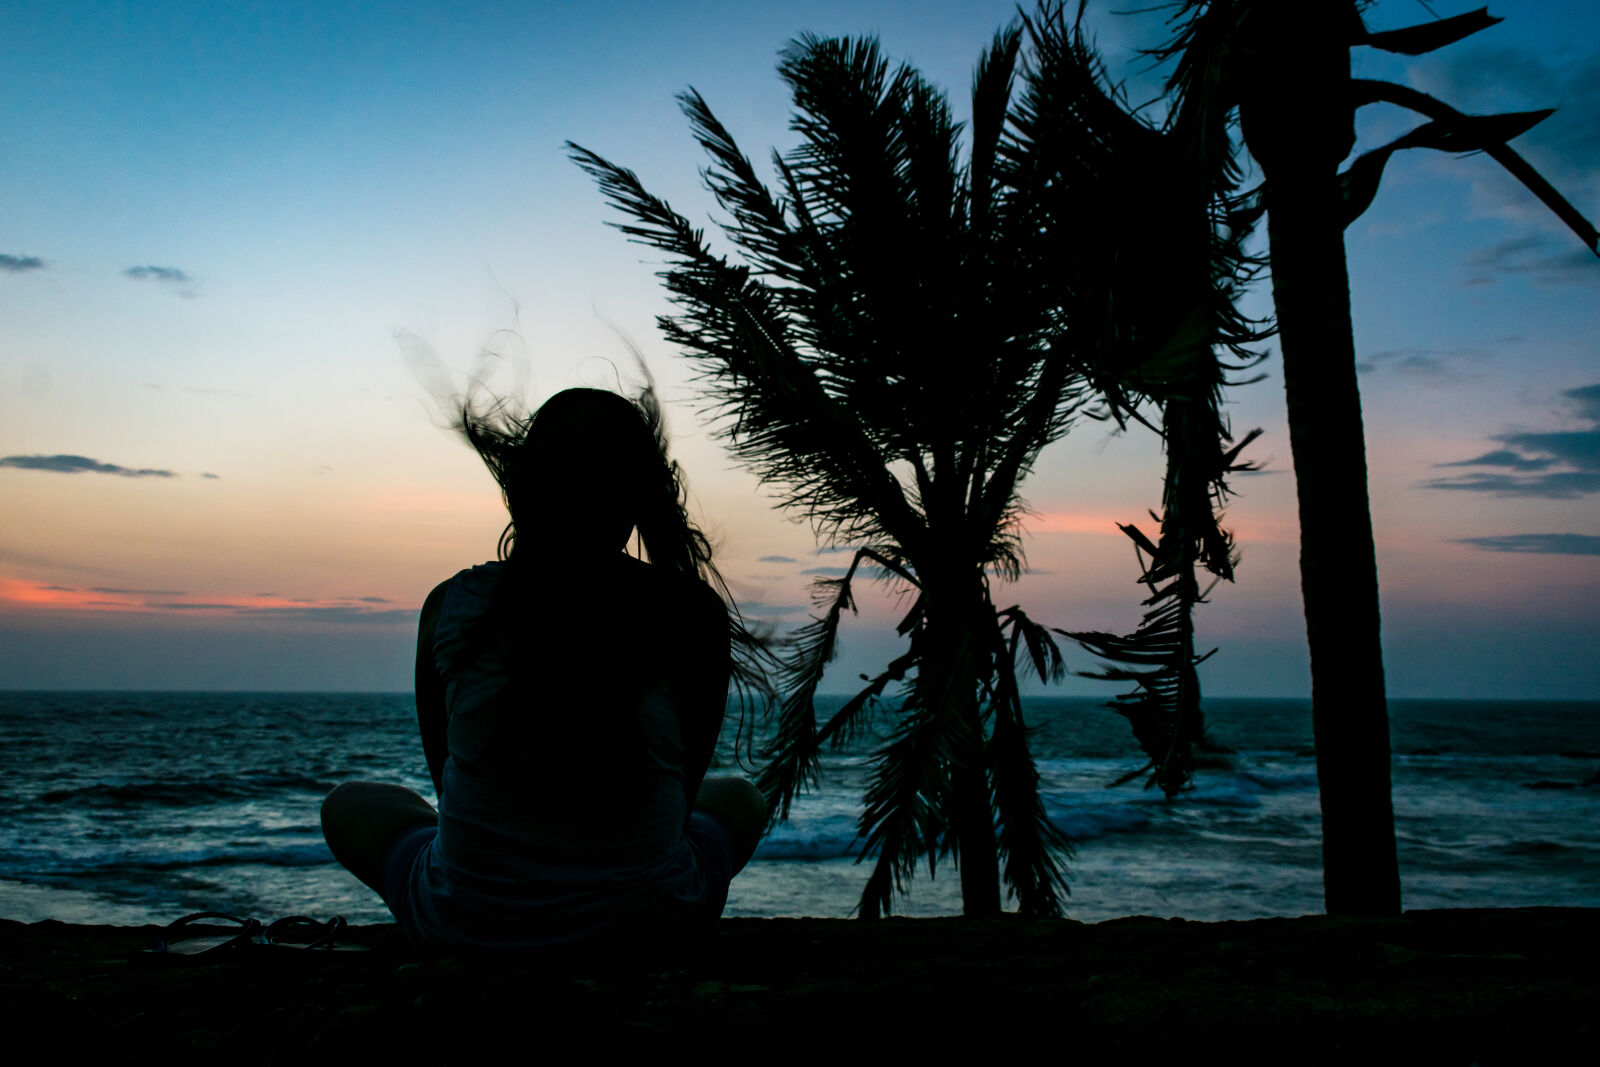 Nikon AF-S DX Nikkor 18-55mm F3.5-5.6G II sample photo. Beach, dusk, girl, sitting photography